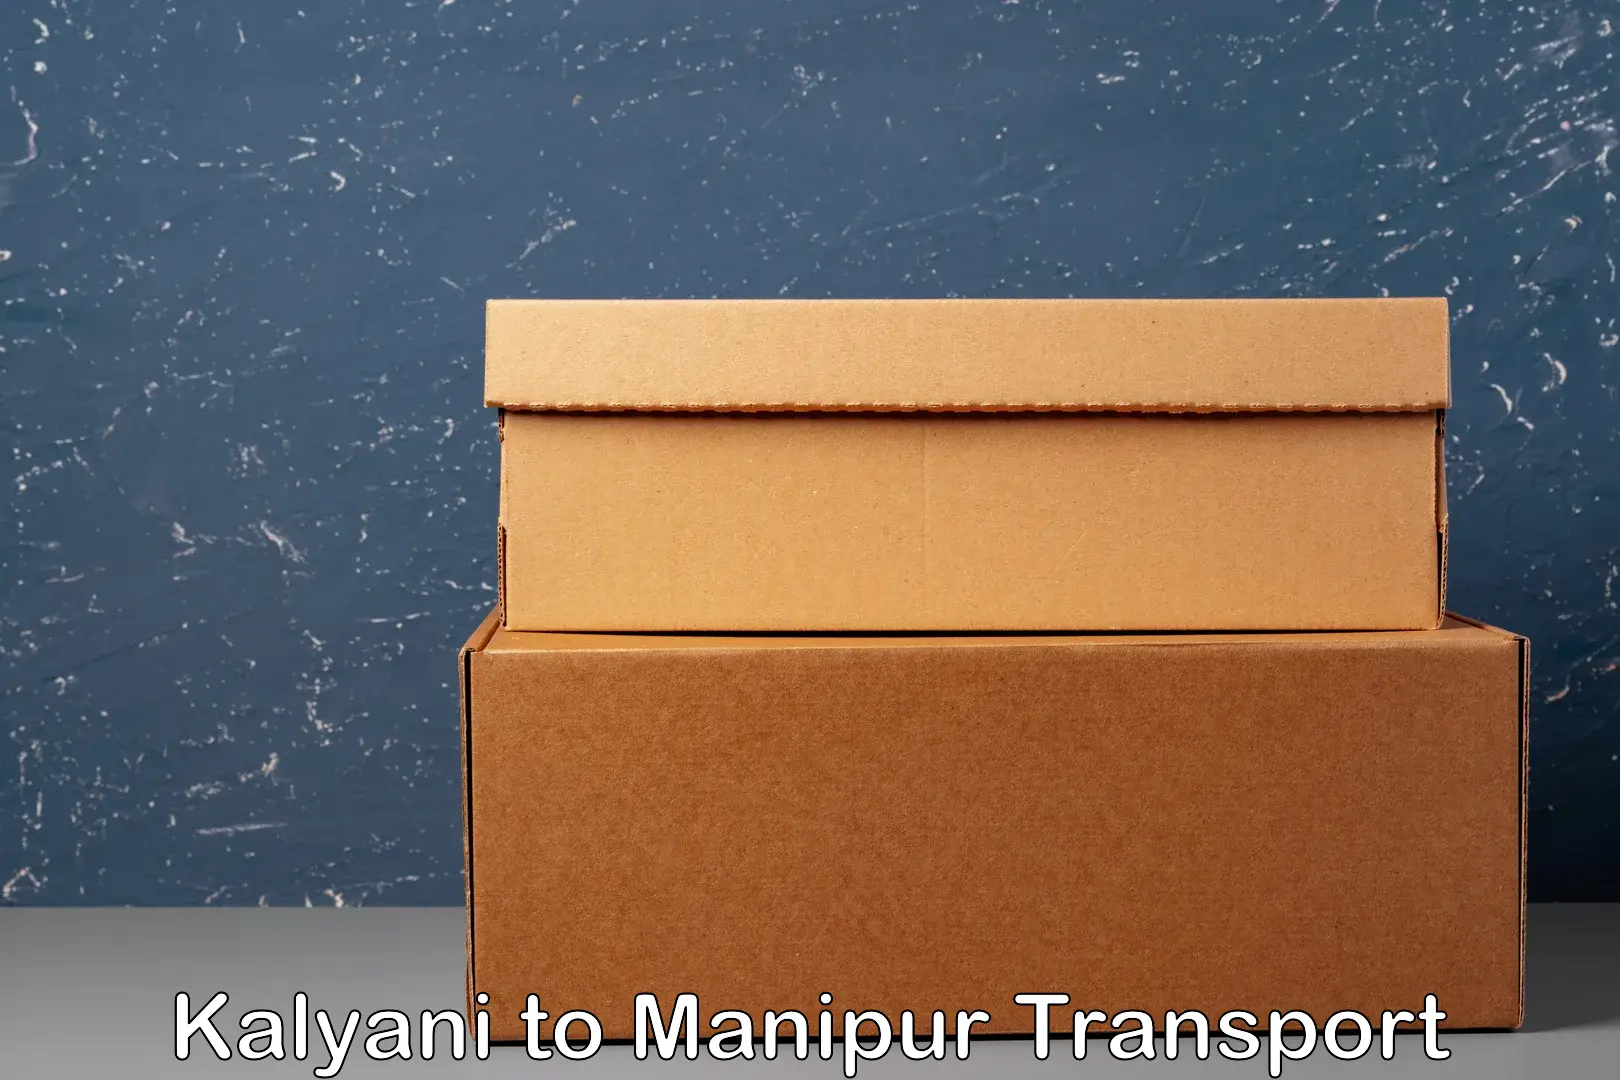 Cycle transportation service Kalyani to Manipur